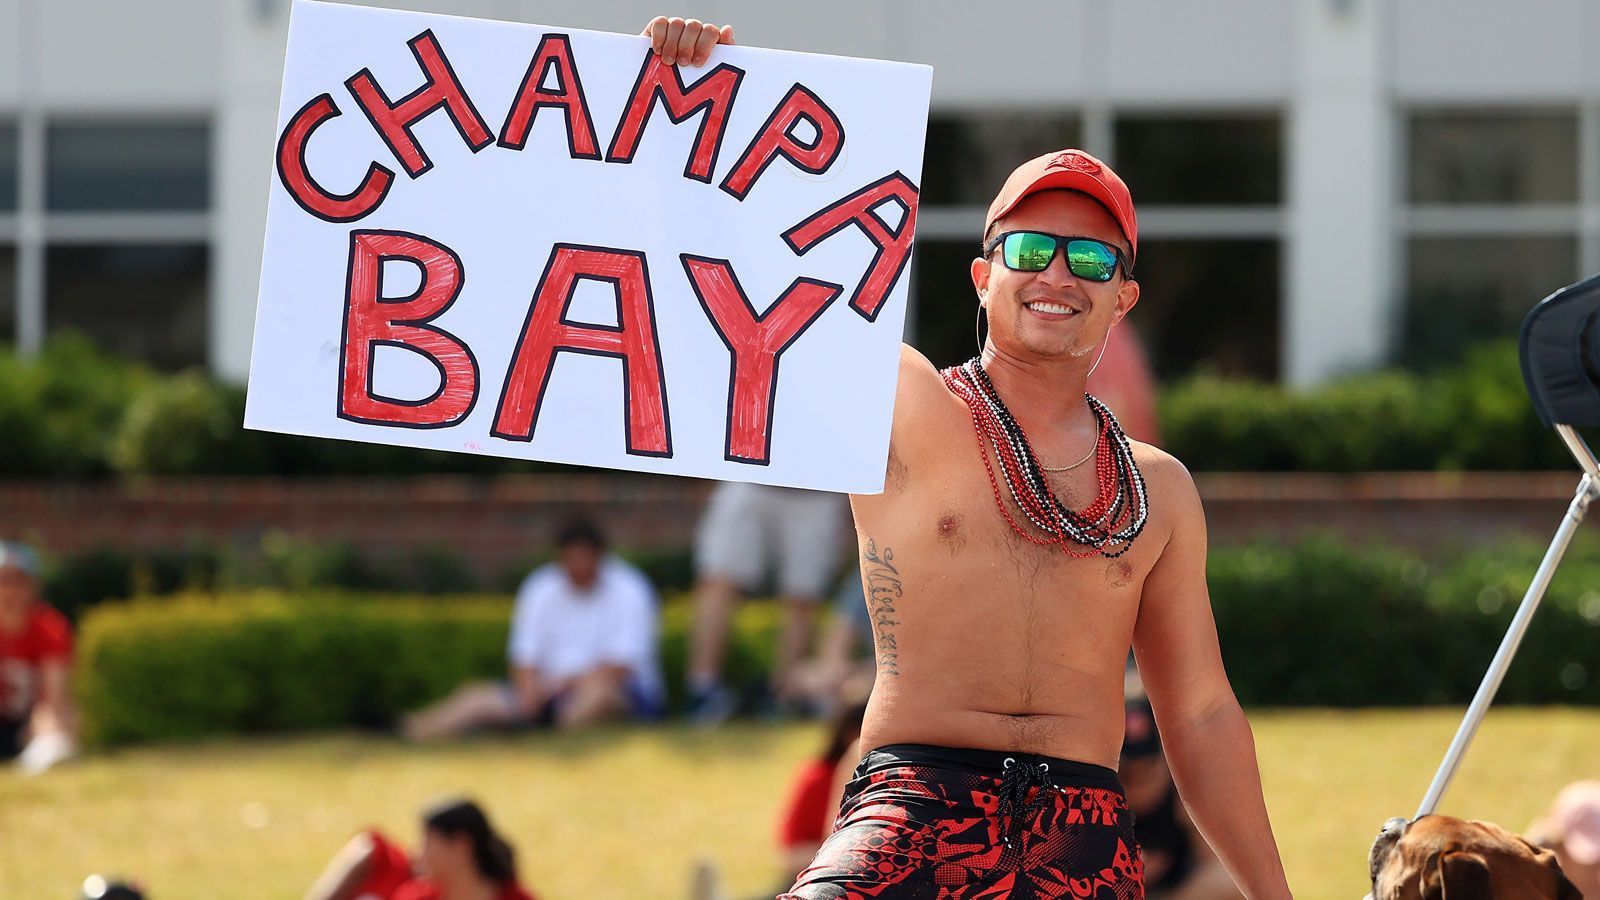 
                <strong>Die Bootsparade der Buccaneers nach dem Super-Bowl-Triumph</strong><br>
                Dieser Fan kreiert einen neuen Stadtnamen für Tampa Bay respektive Tompa Bay.
              